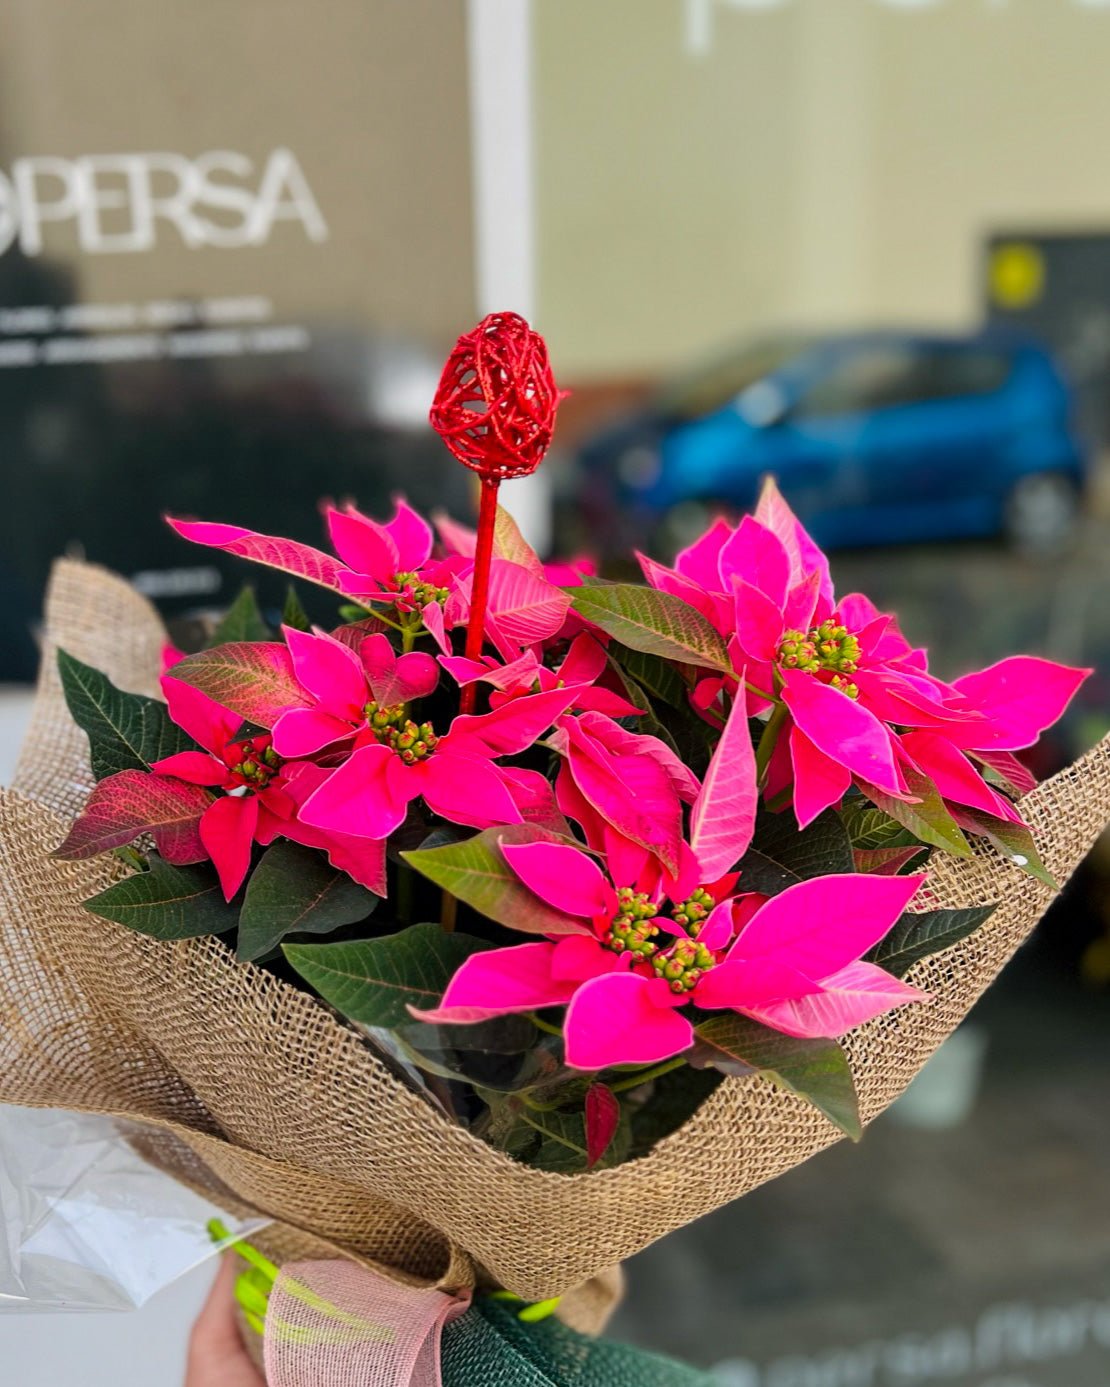 Flor de Pascua Fushia | Poinsettia - Persa Flores